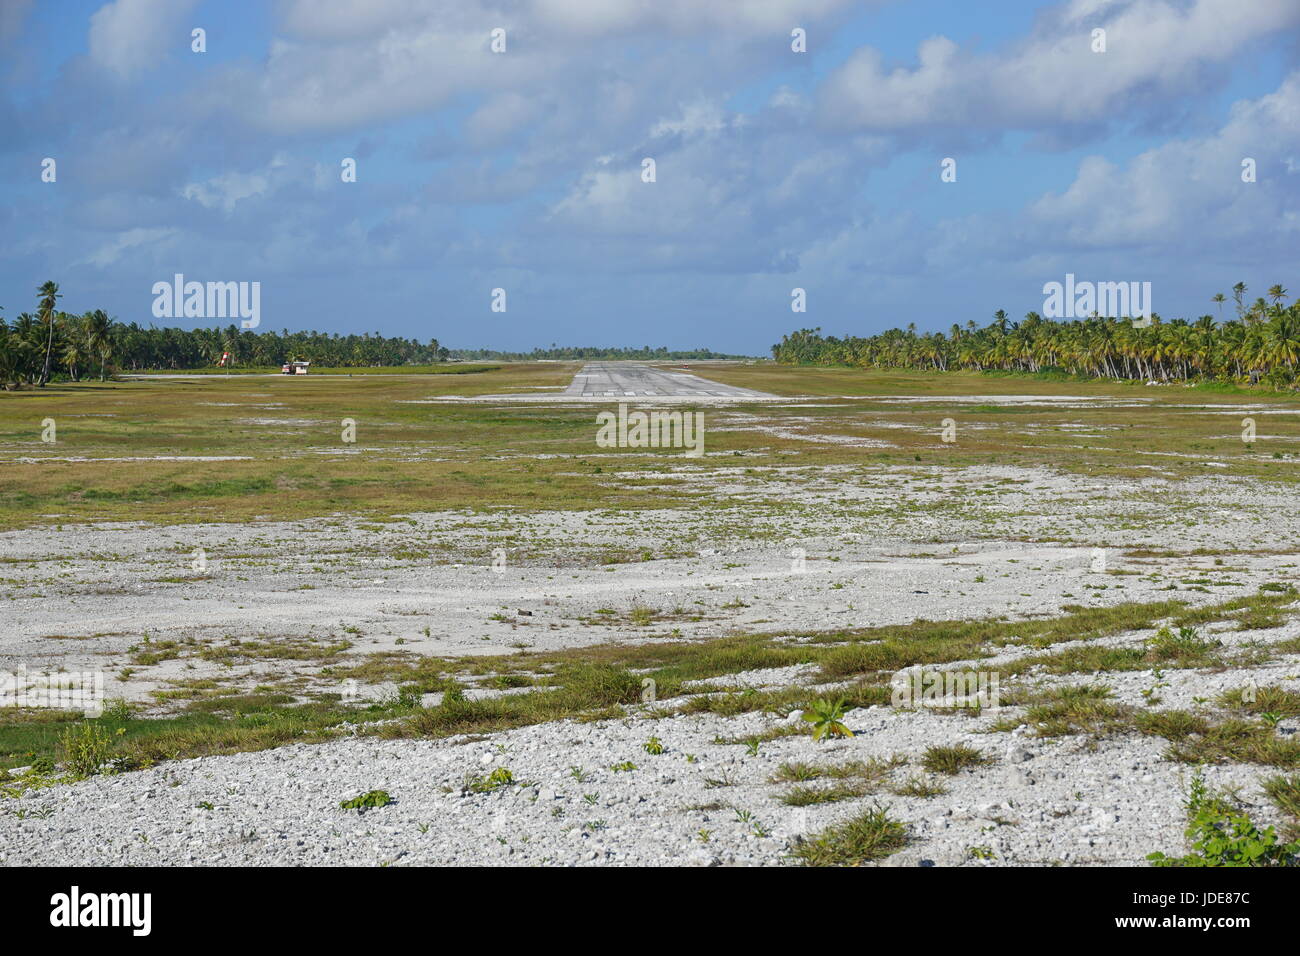 El campo de aterrizaje de aviones en Tikehau atoll rodeada por plantaciones de árboles de coco, Tuamotus archipiélago, Polinesia Francesa, Pacífico Sur Foto de stock